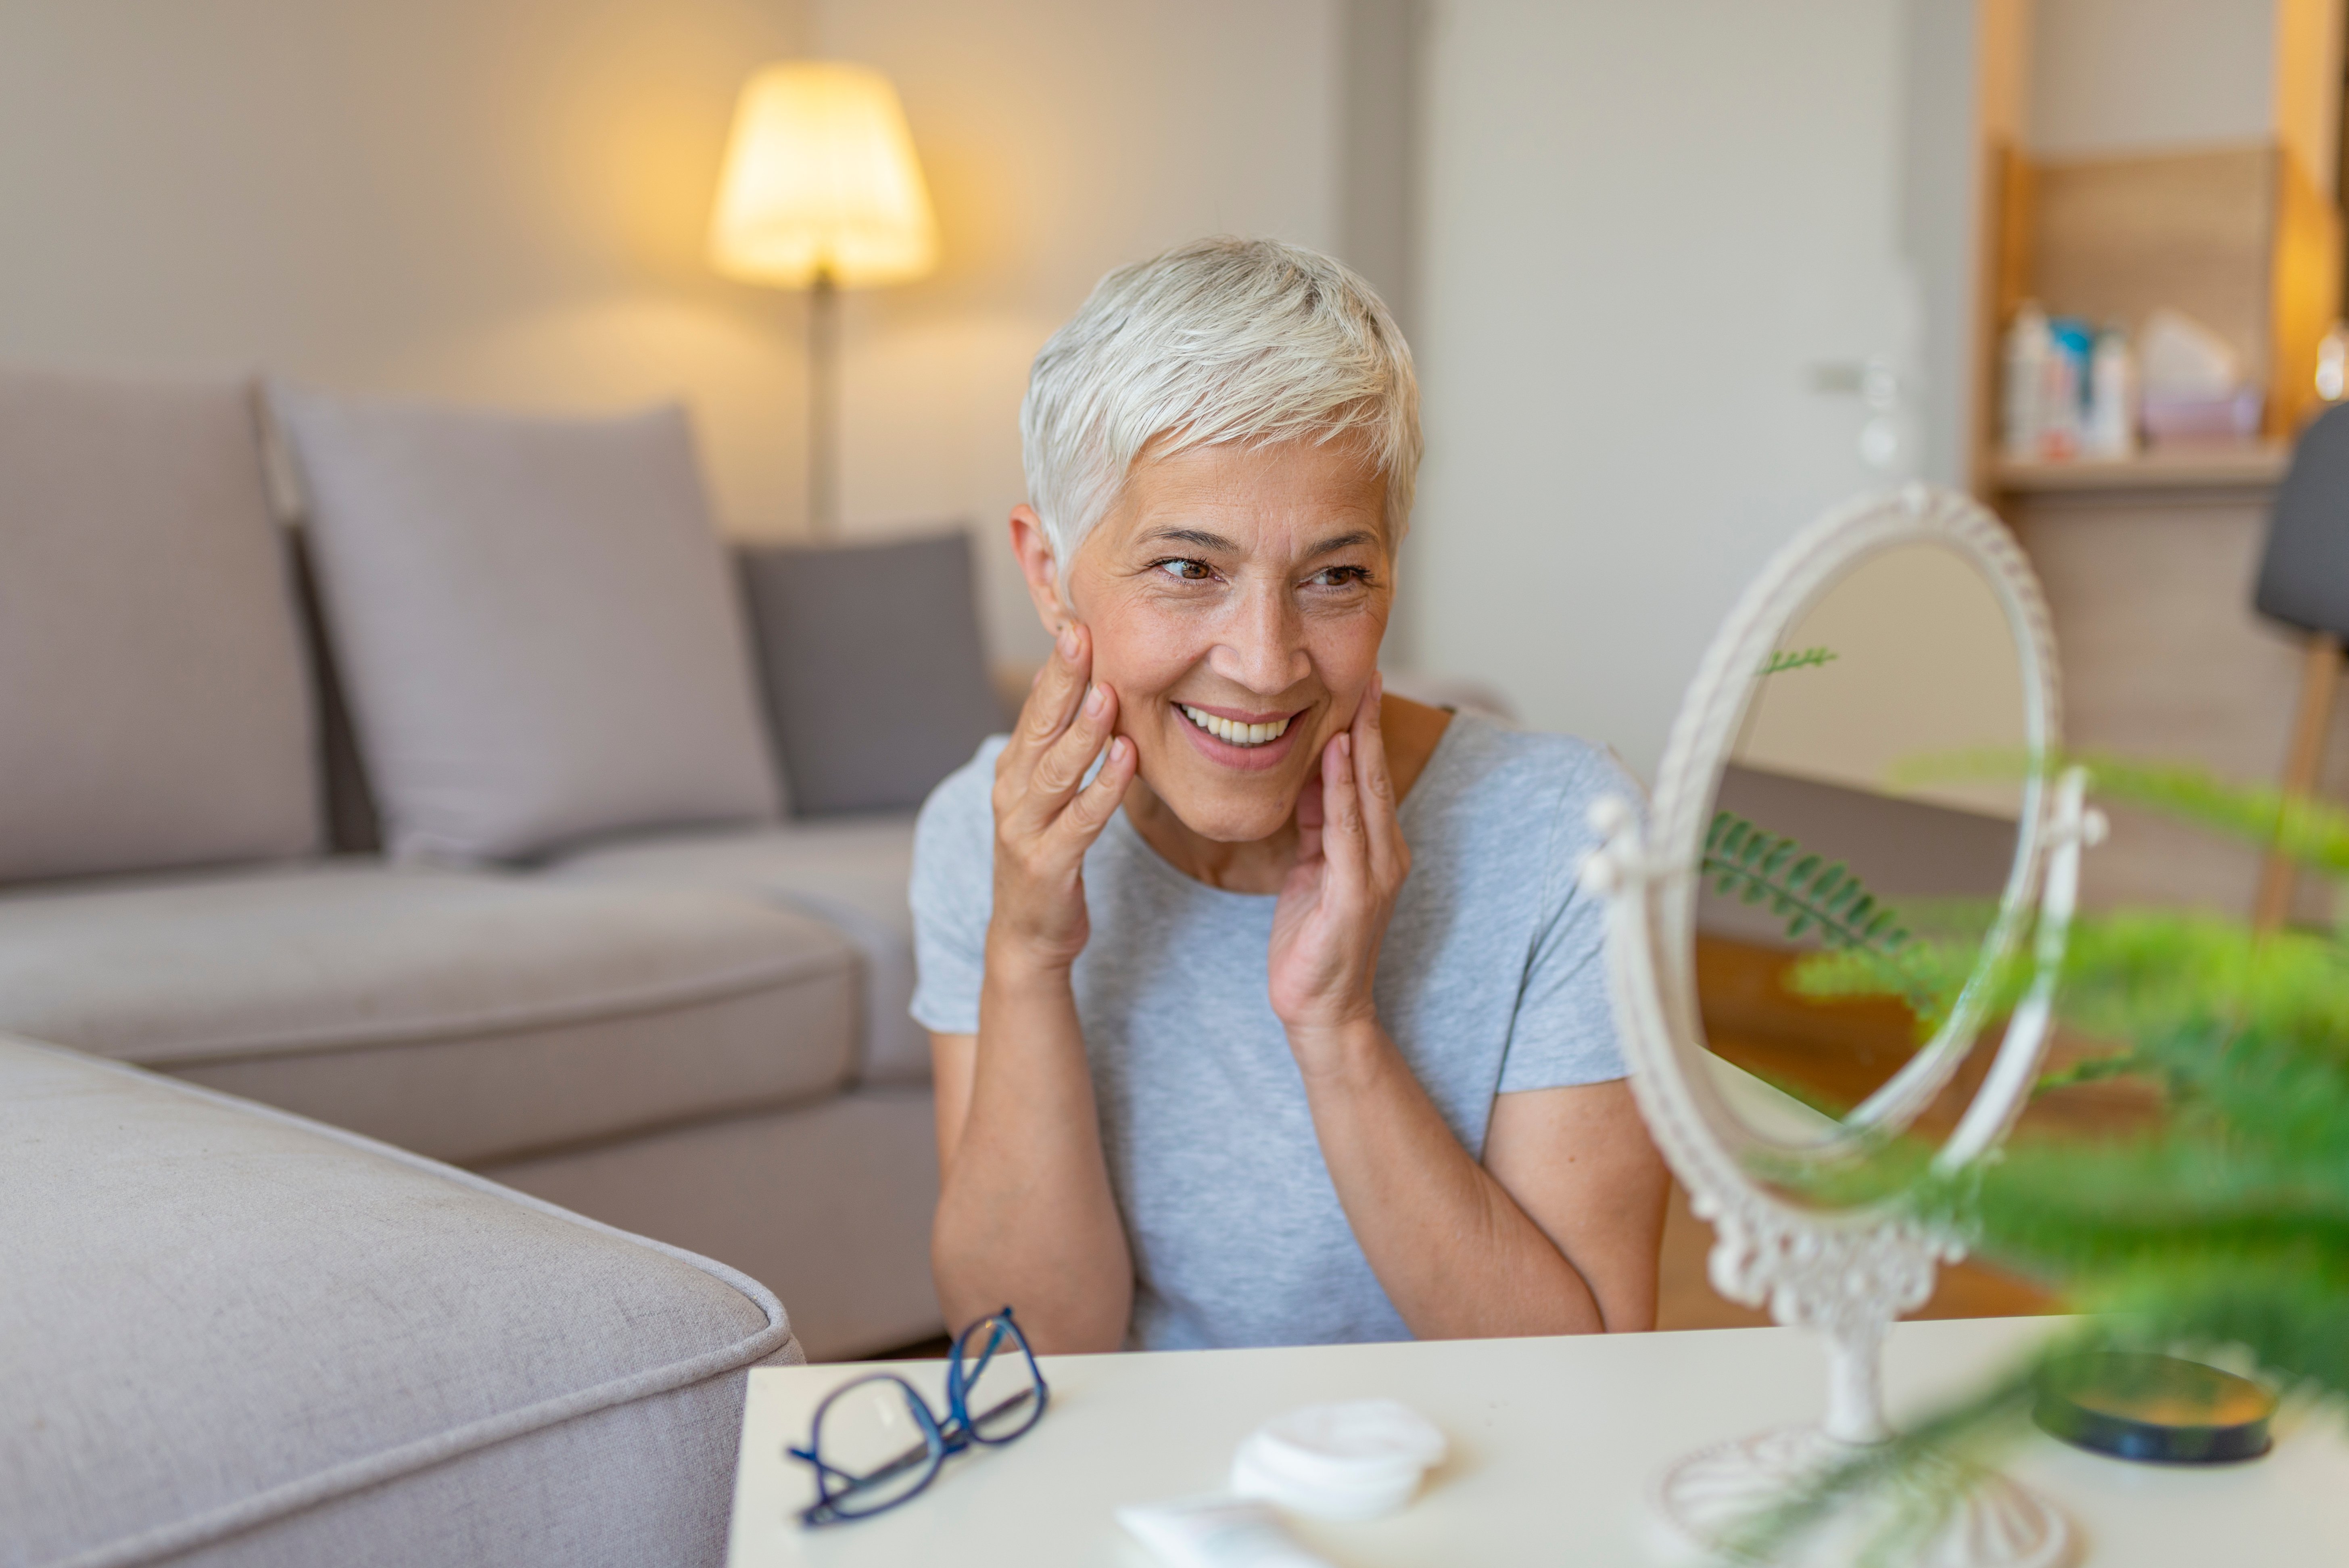 Une femme d'âge mure devant son miroir | source : Shutterstock